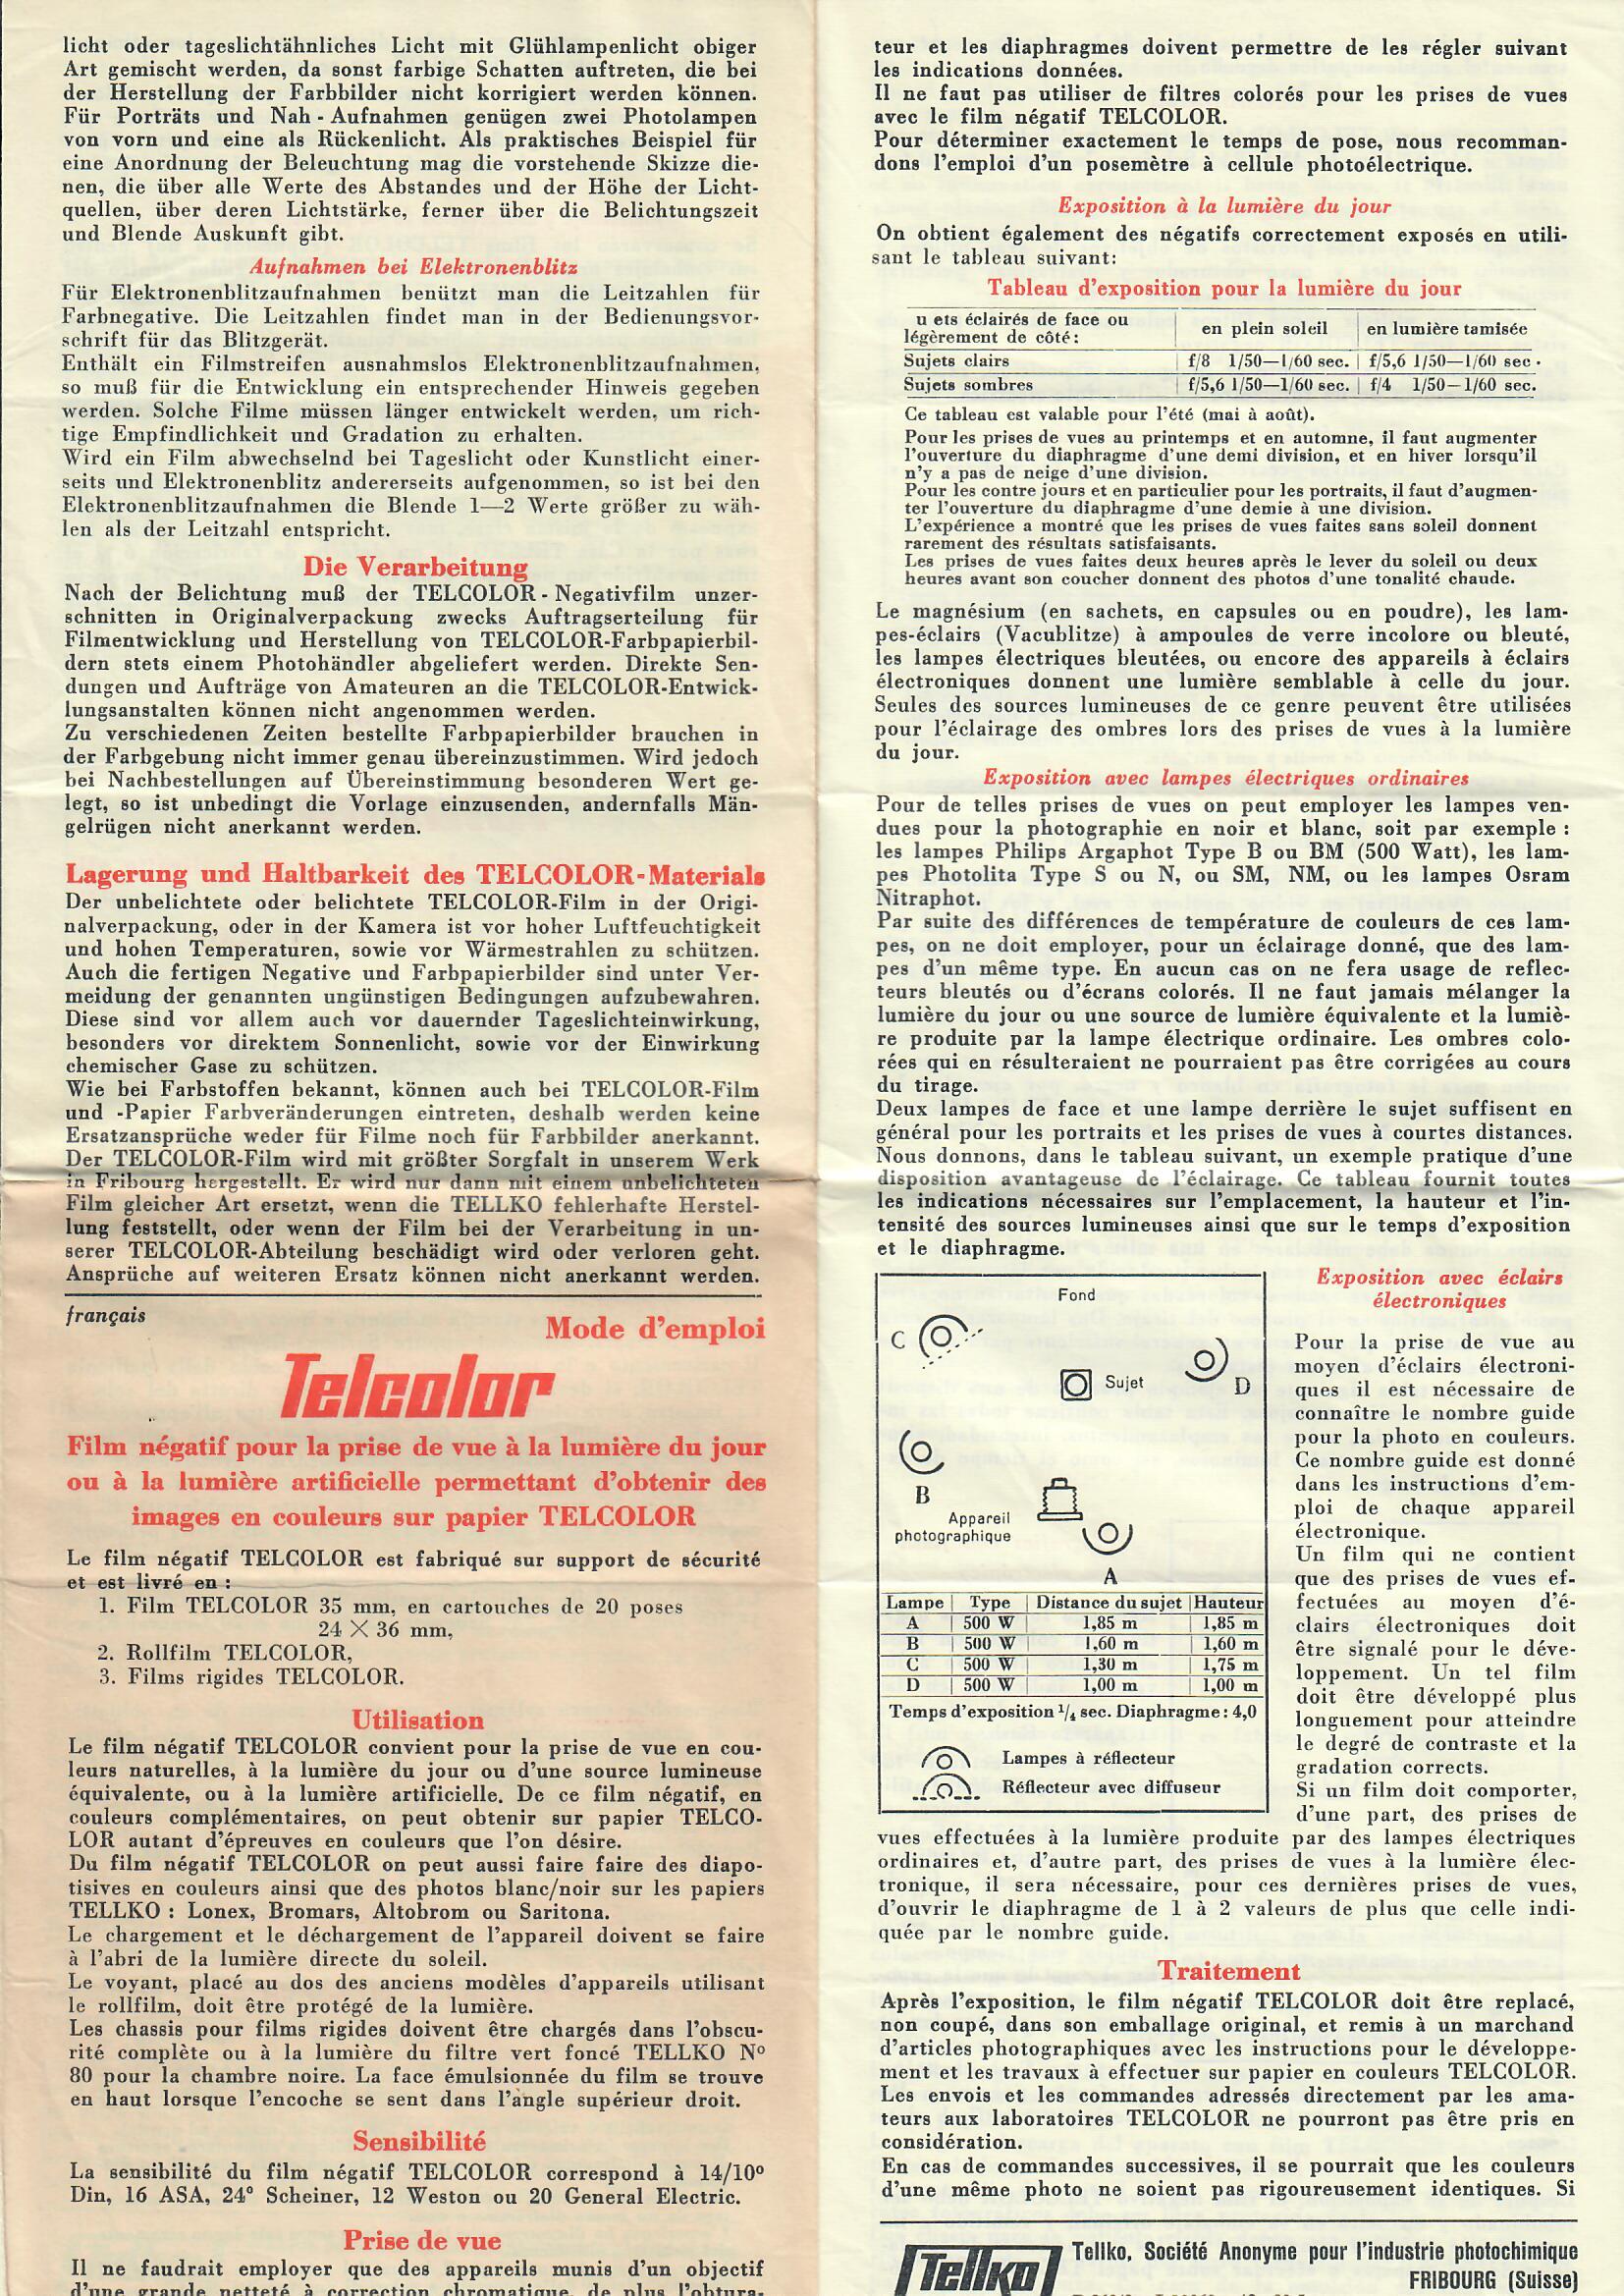 1960 - Telko - Notice - Telcolor